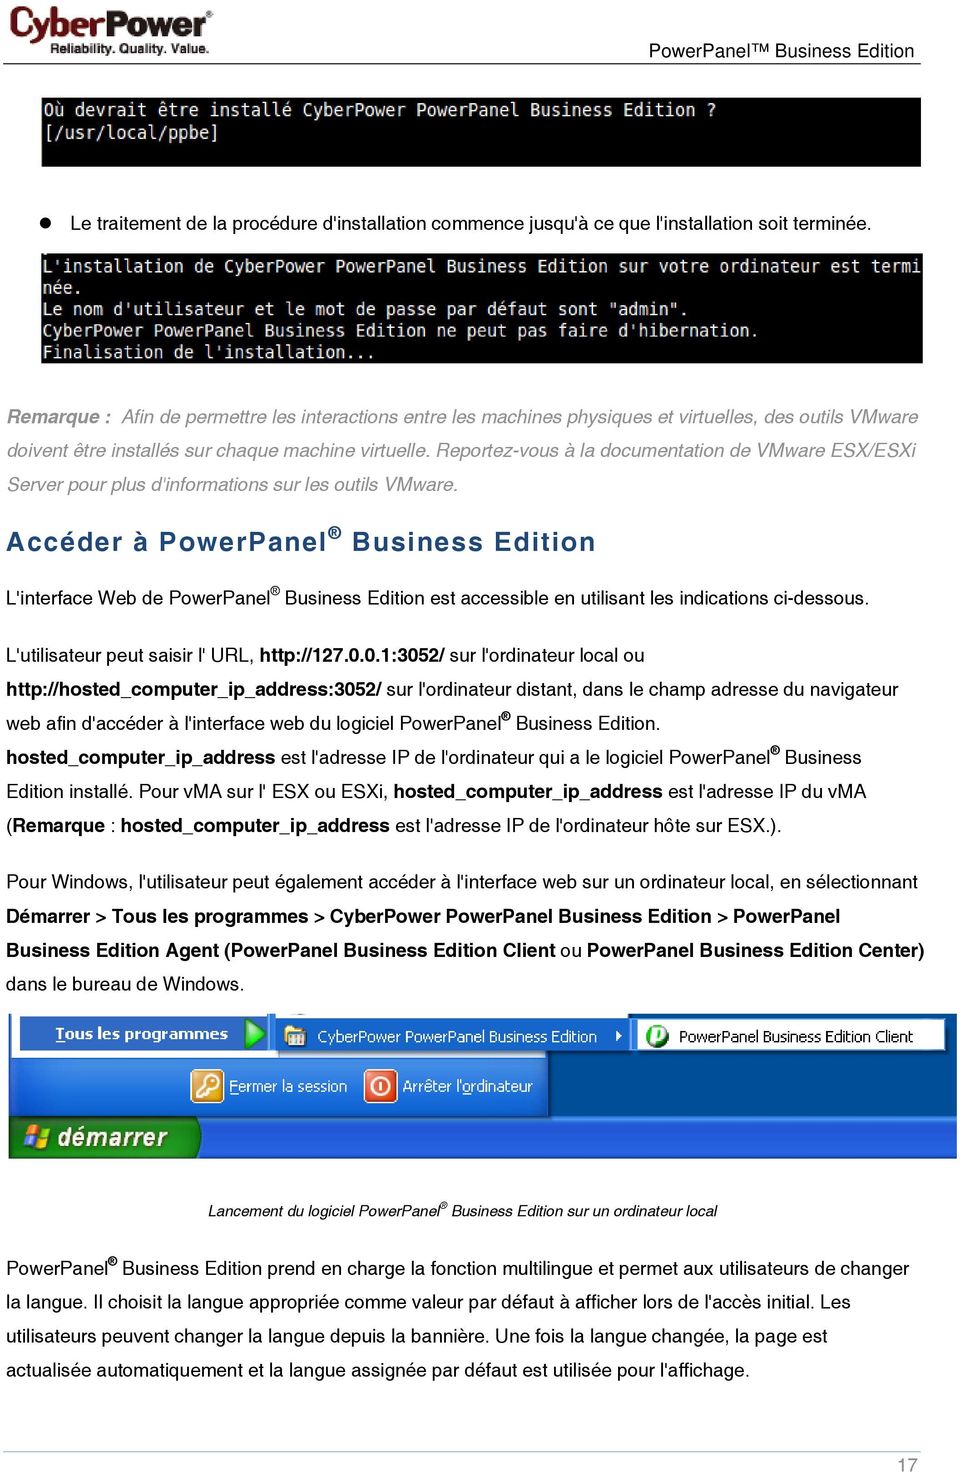 Reportez-vous à la documentation de VMware ESX/ESXi Server pour plus d'informations sur les outils VMware.